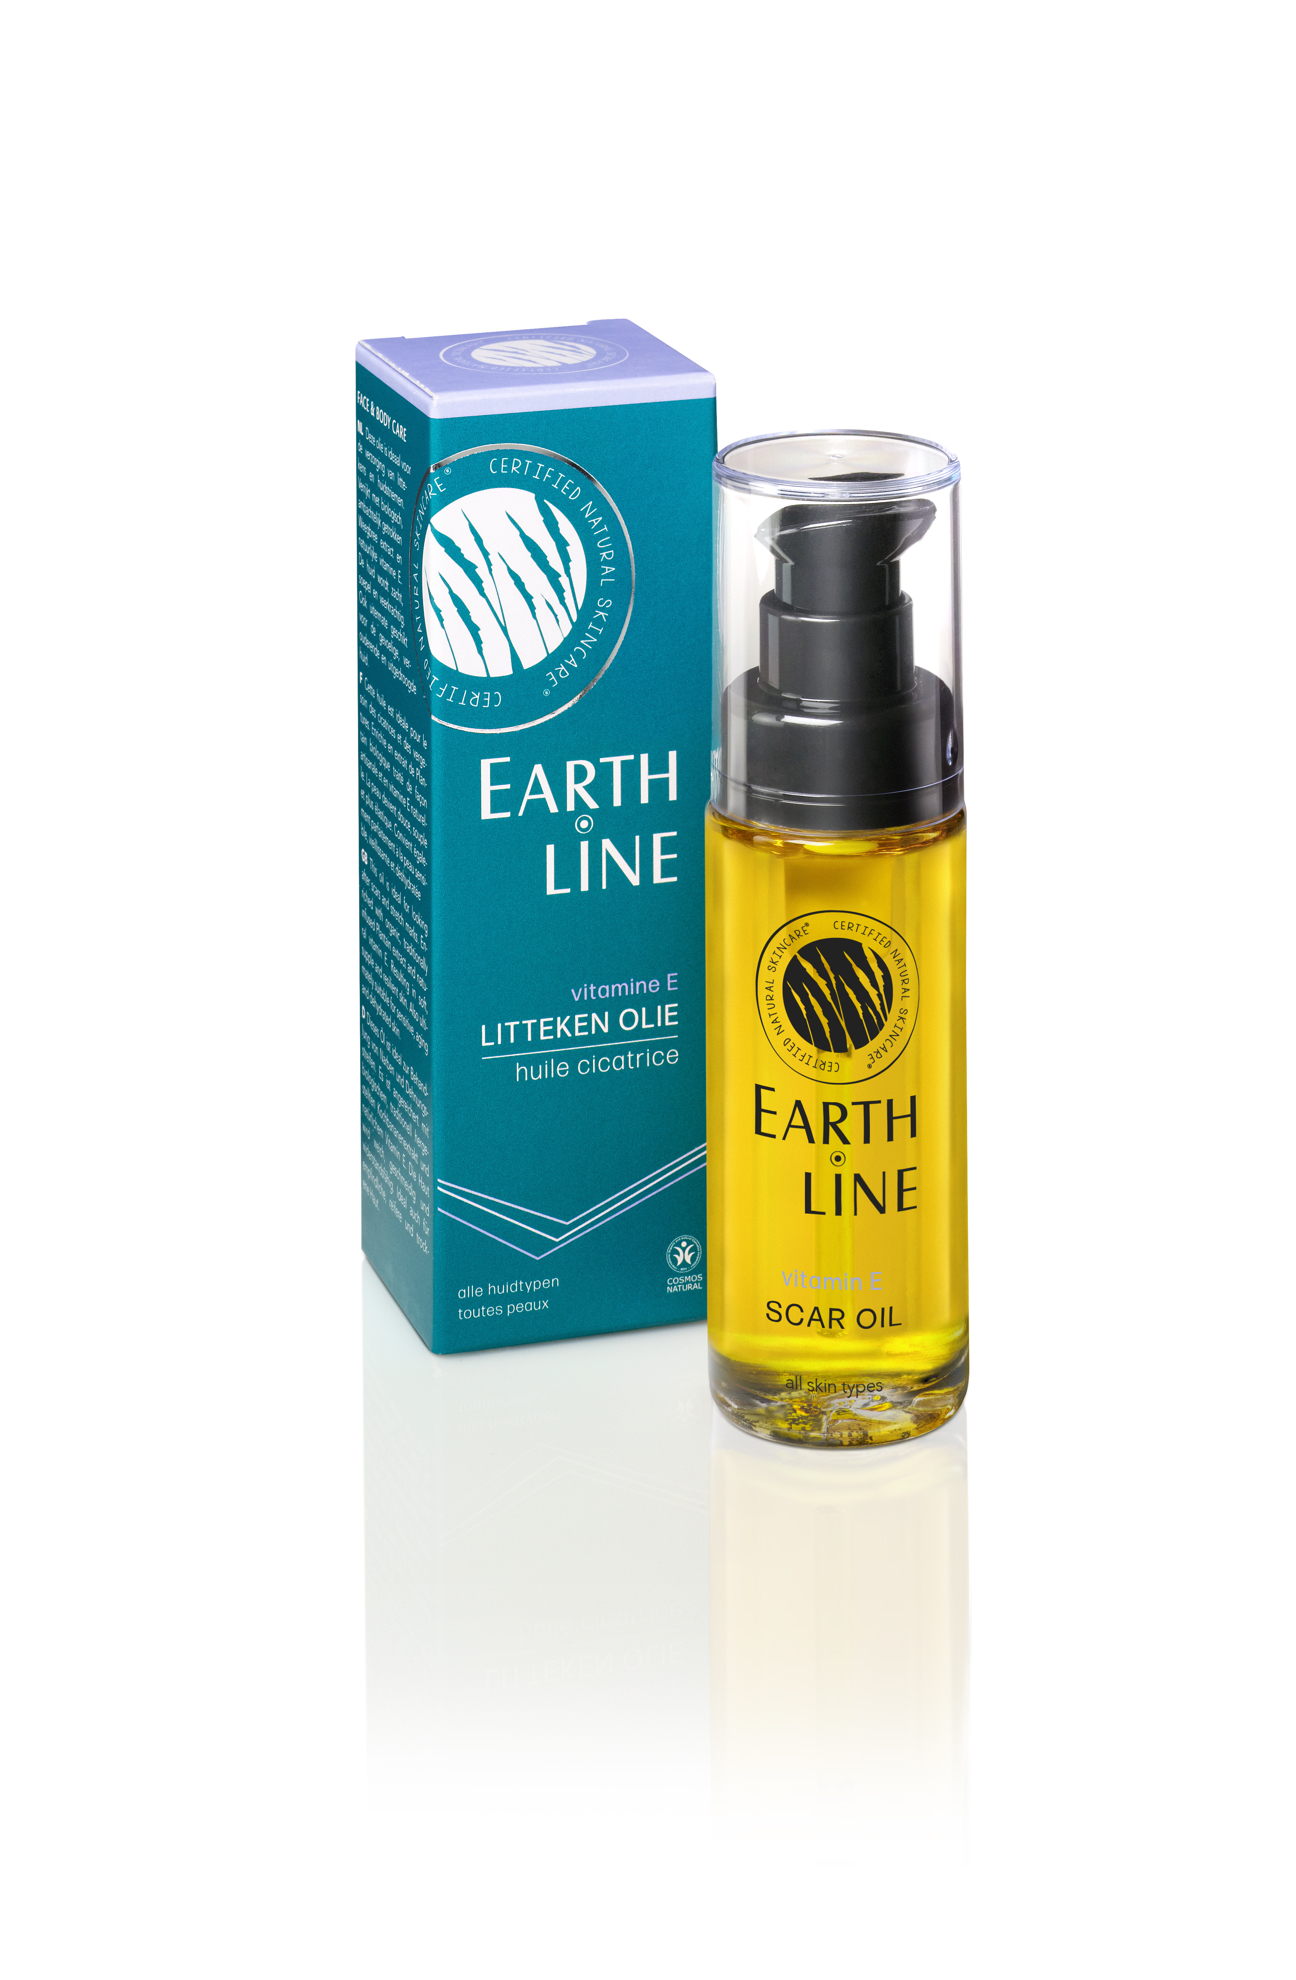 Earth-line - Vitamine E Litteken Olie